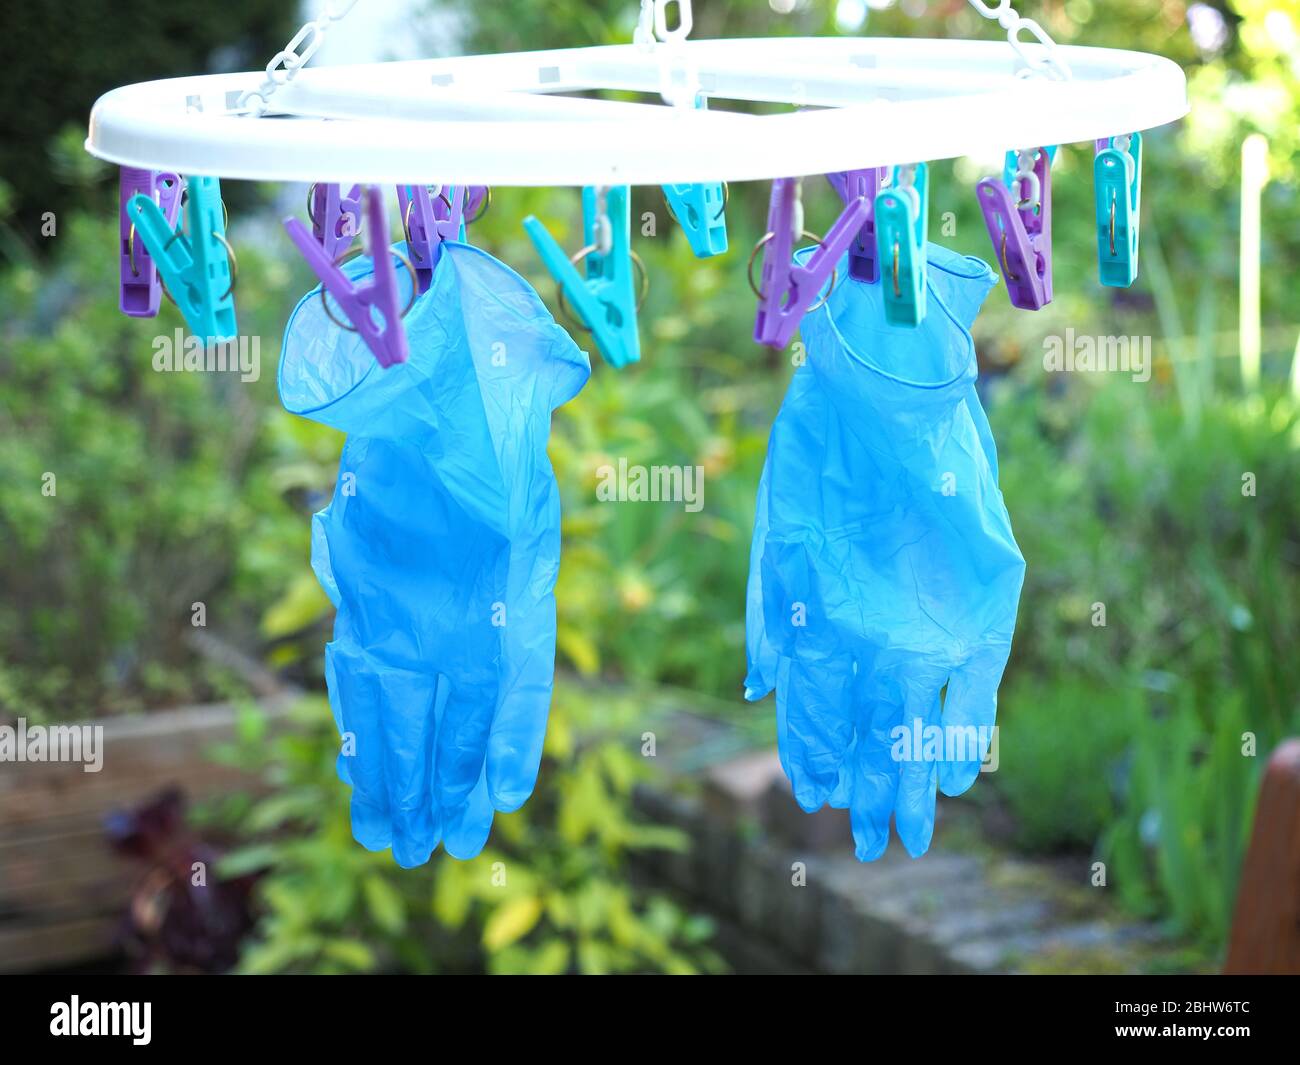 Vista de un par de guantes quirúrgicos azules reutilizables que cuelgan hasta secarse después de ser lavados durante la pandemia del coronavirus de 2020 Foto de stock